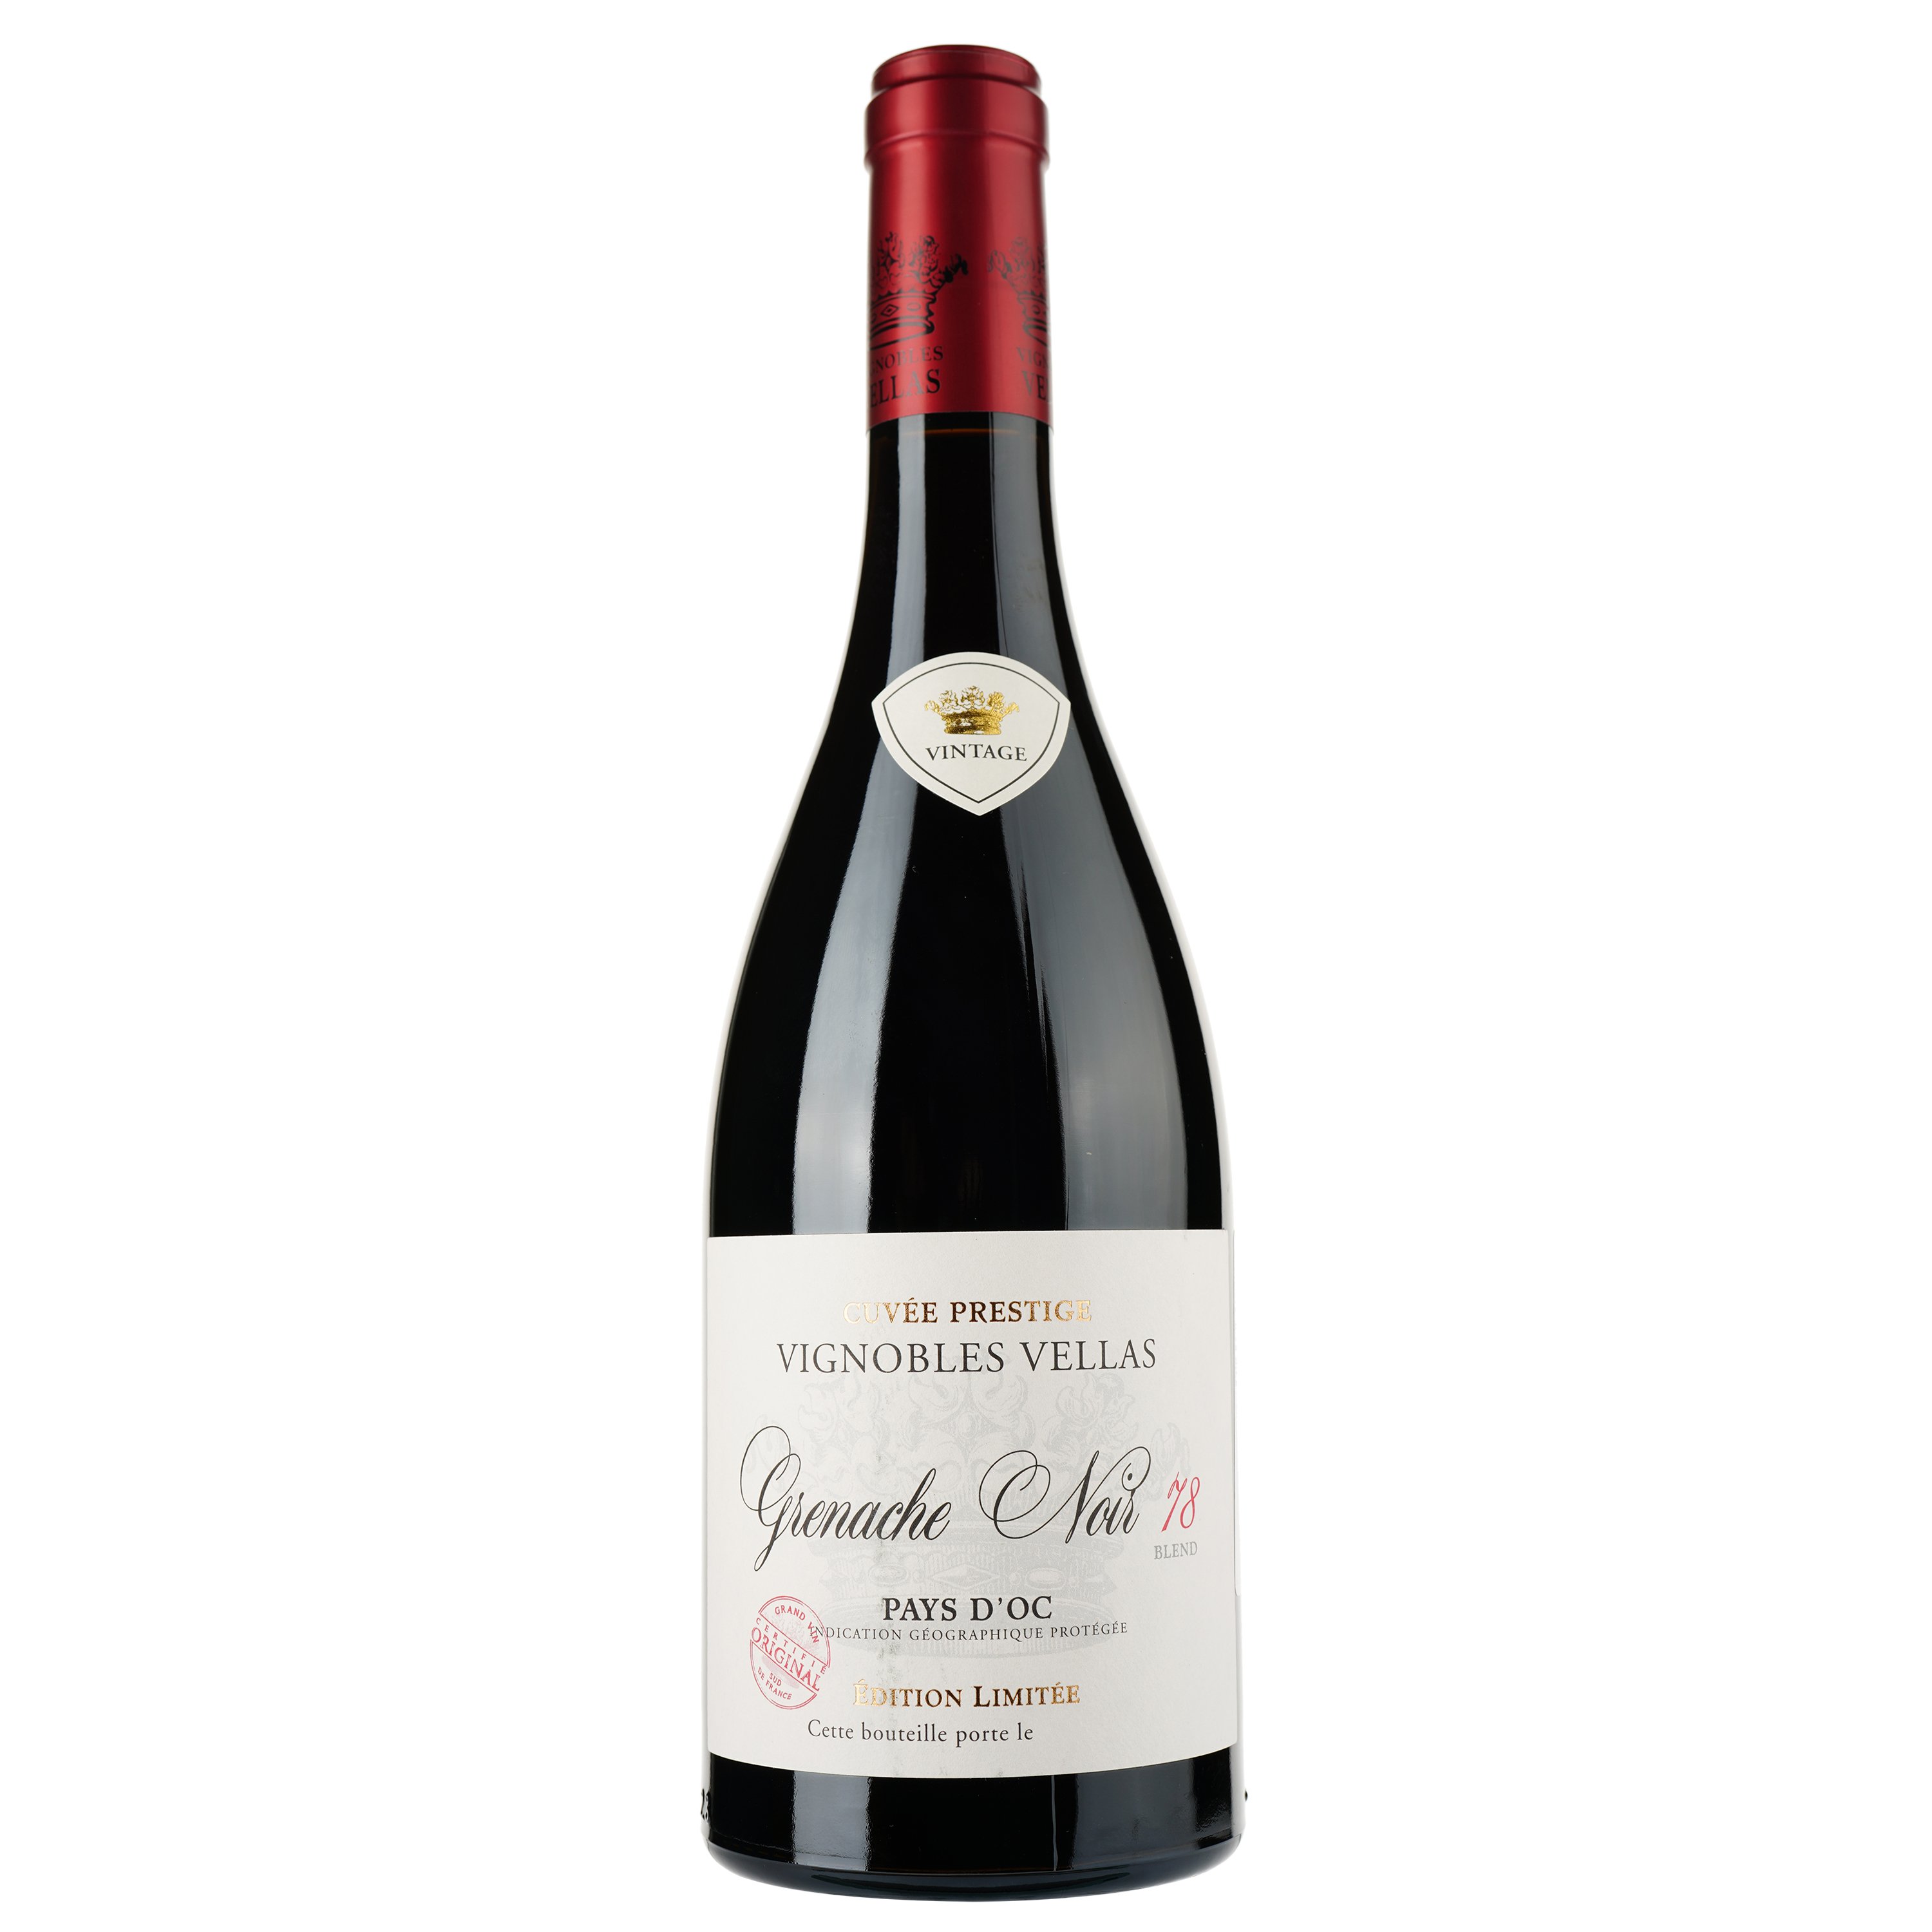 Вино Vignobles Vellas Grenache Noir 78 Blend Edition Limitee IGP Pays D'Oc, червоне, сухе, 0,75 л - фото 1